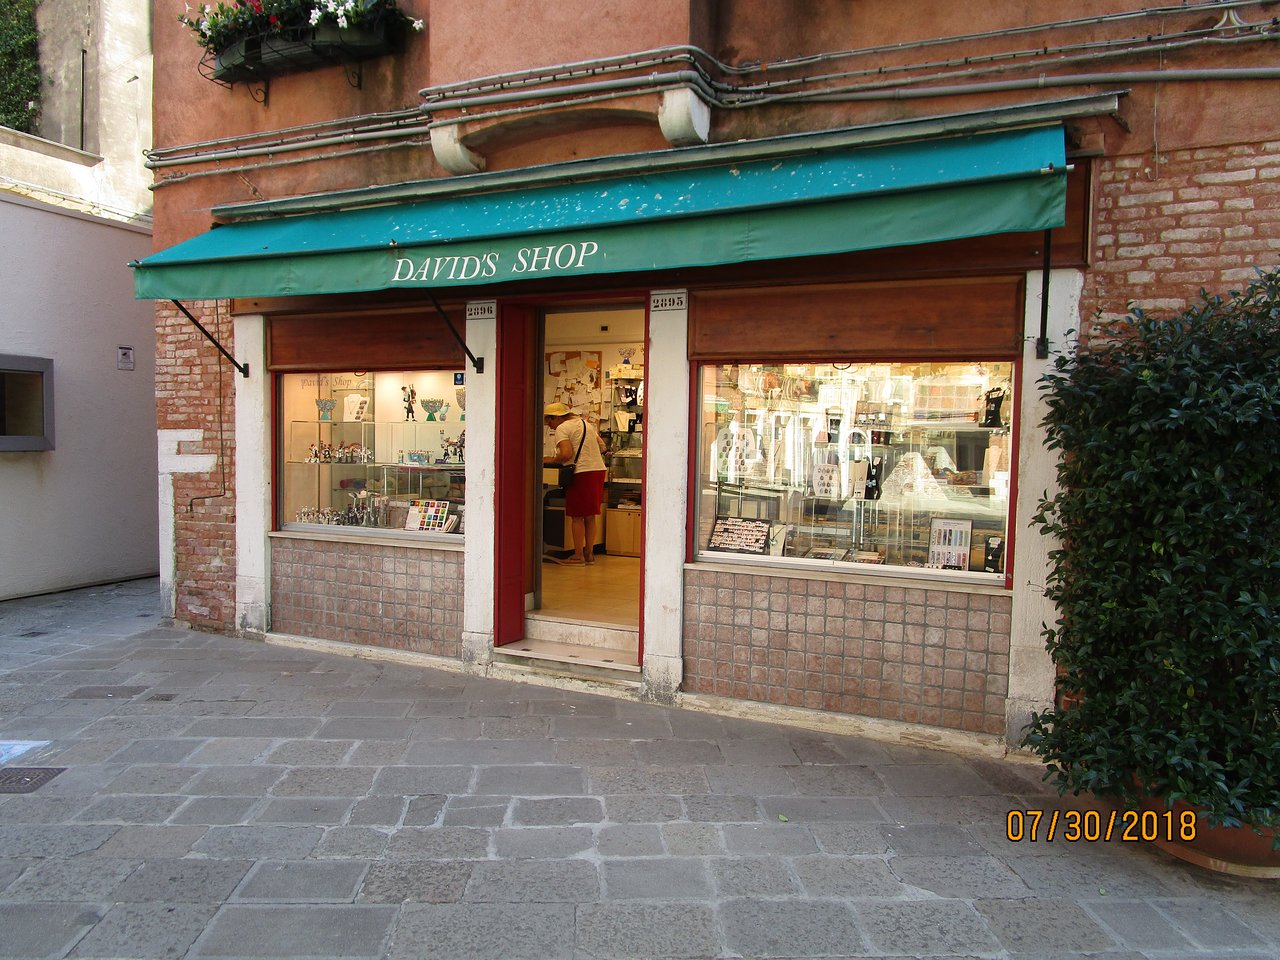 David's Shop